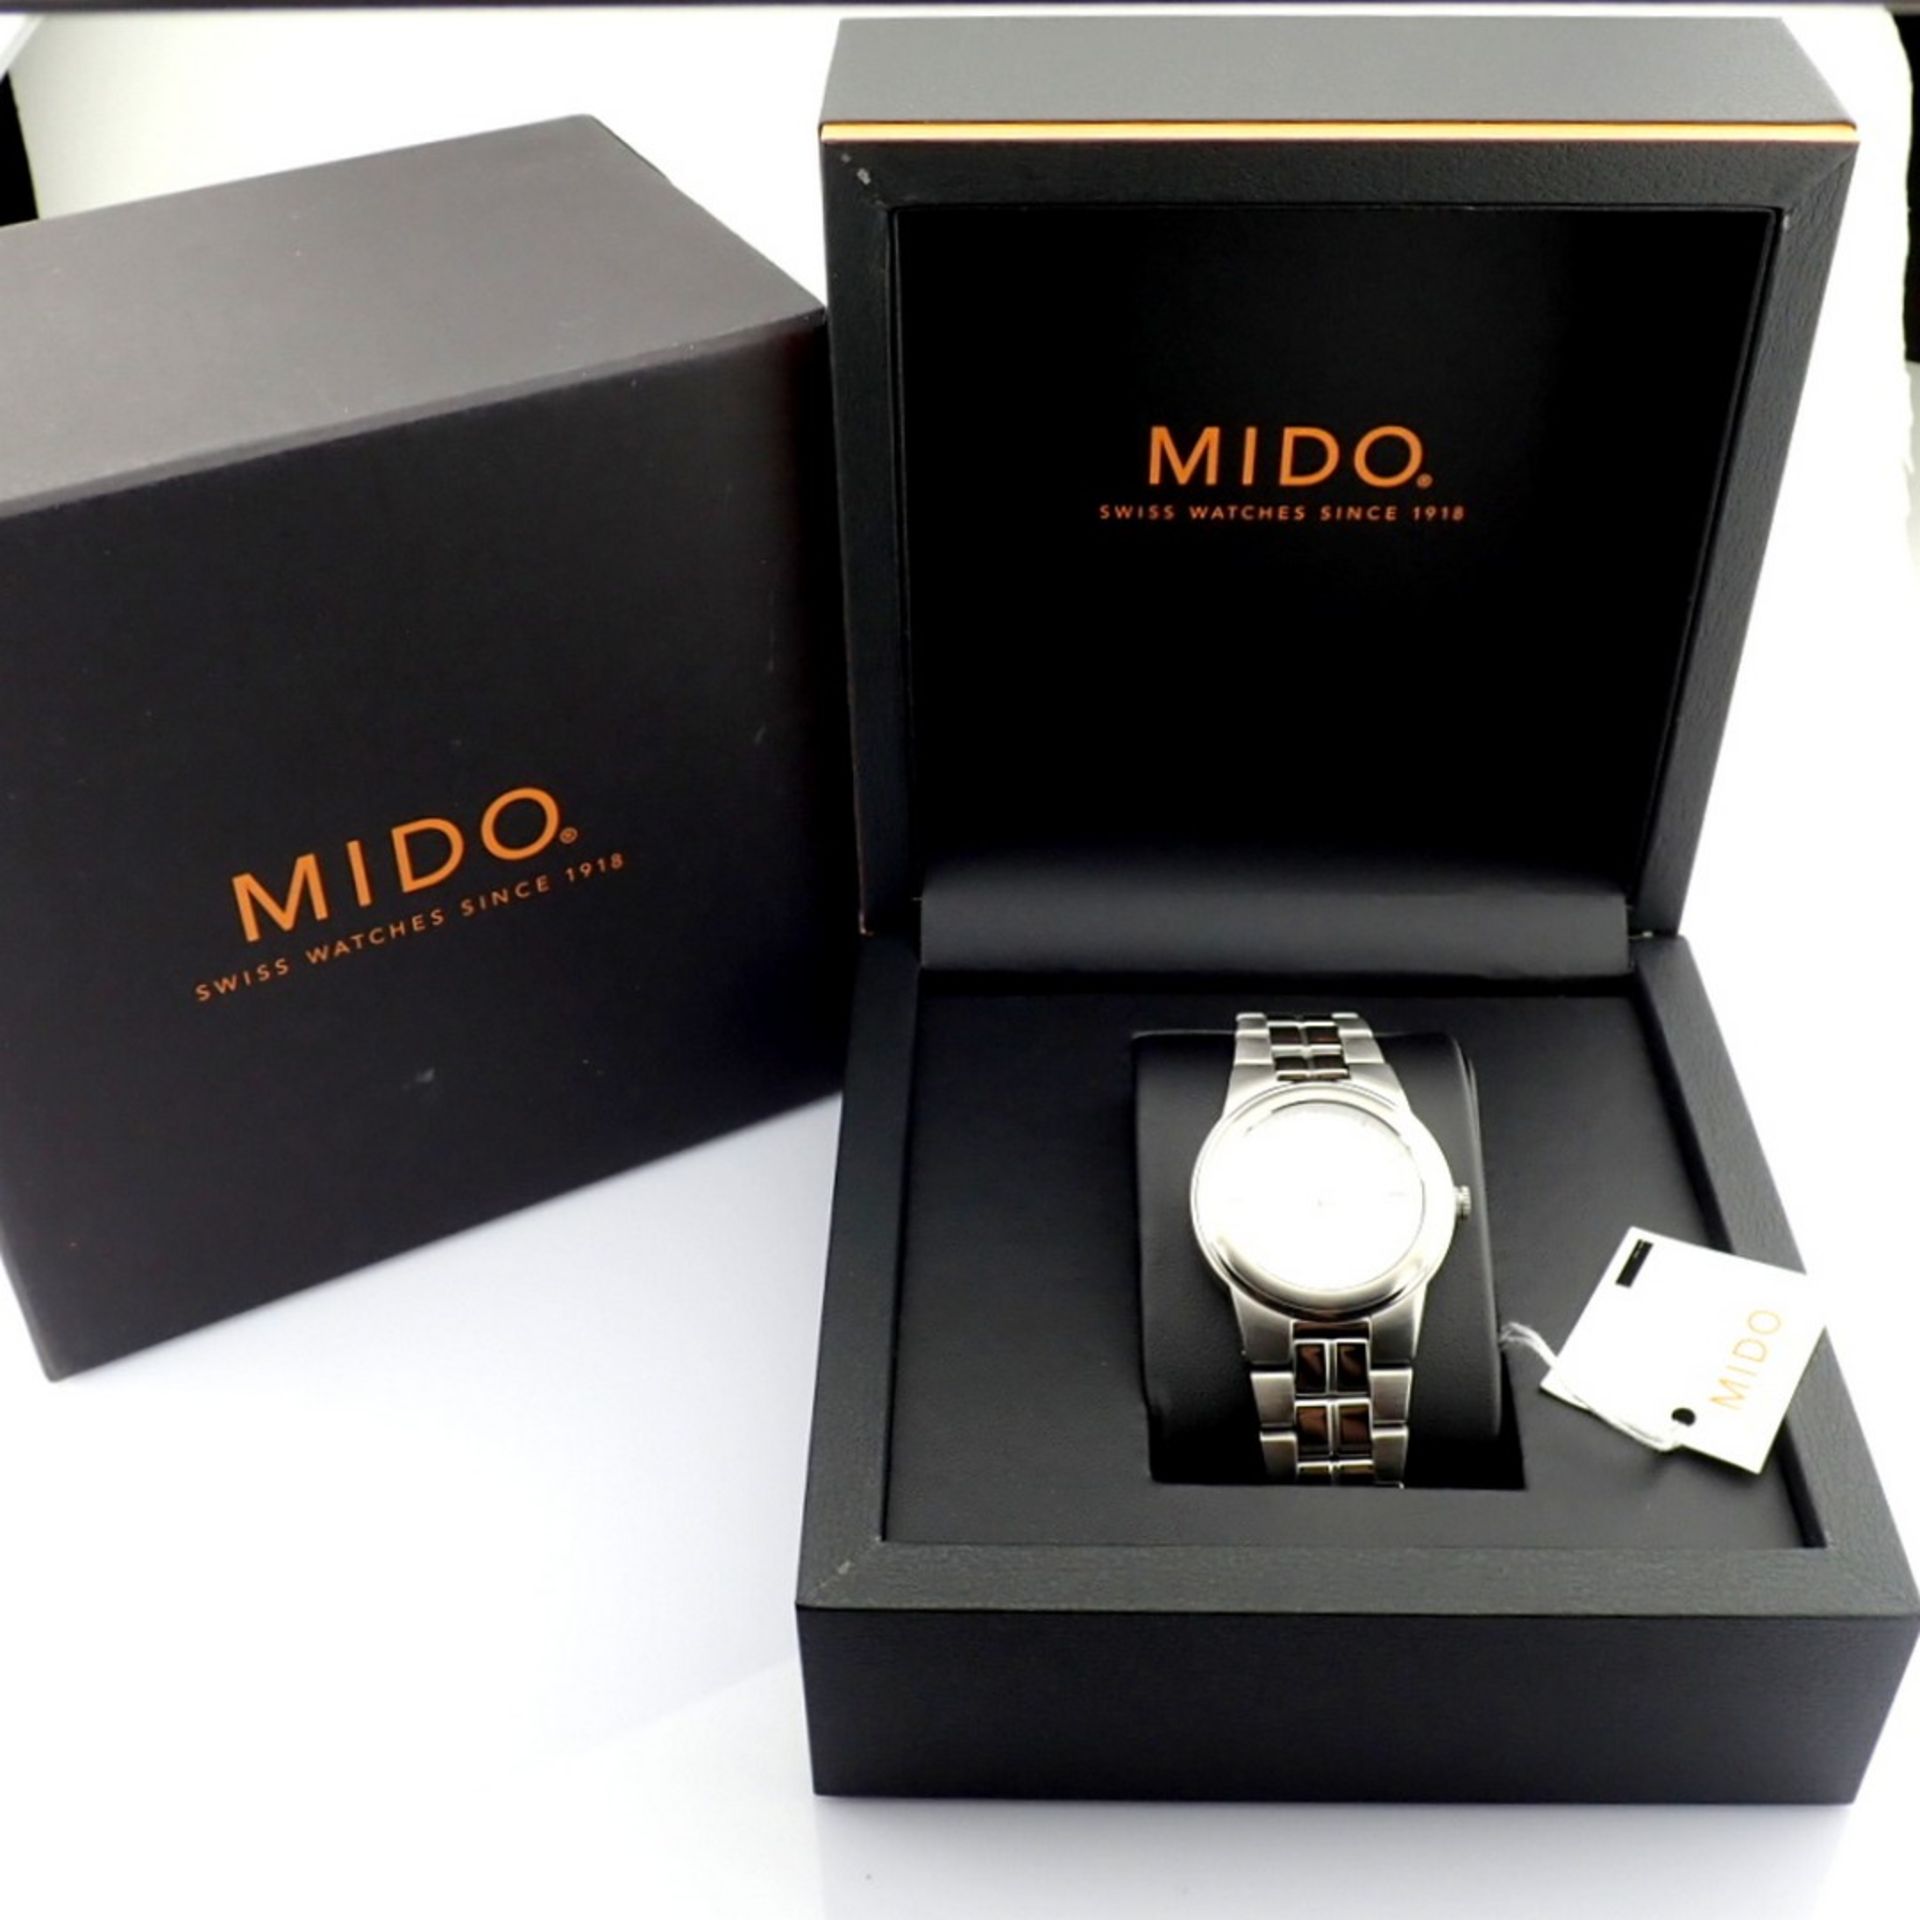 Mido / Ocean Star Aquadura (Brand new) - Gentlemen's Steel Wristwatch - Image 2 of 12